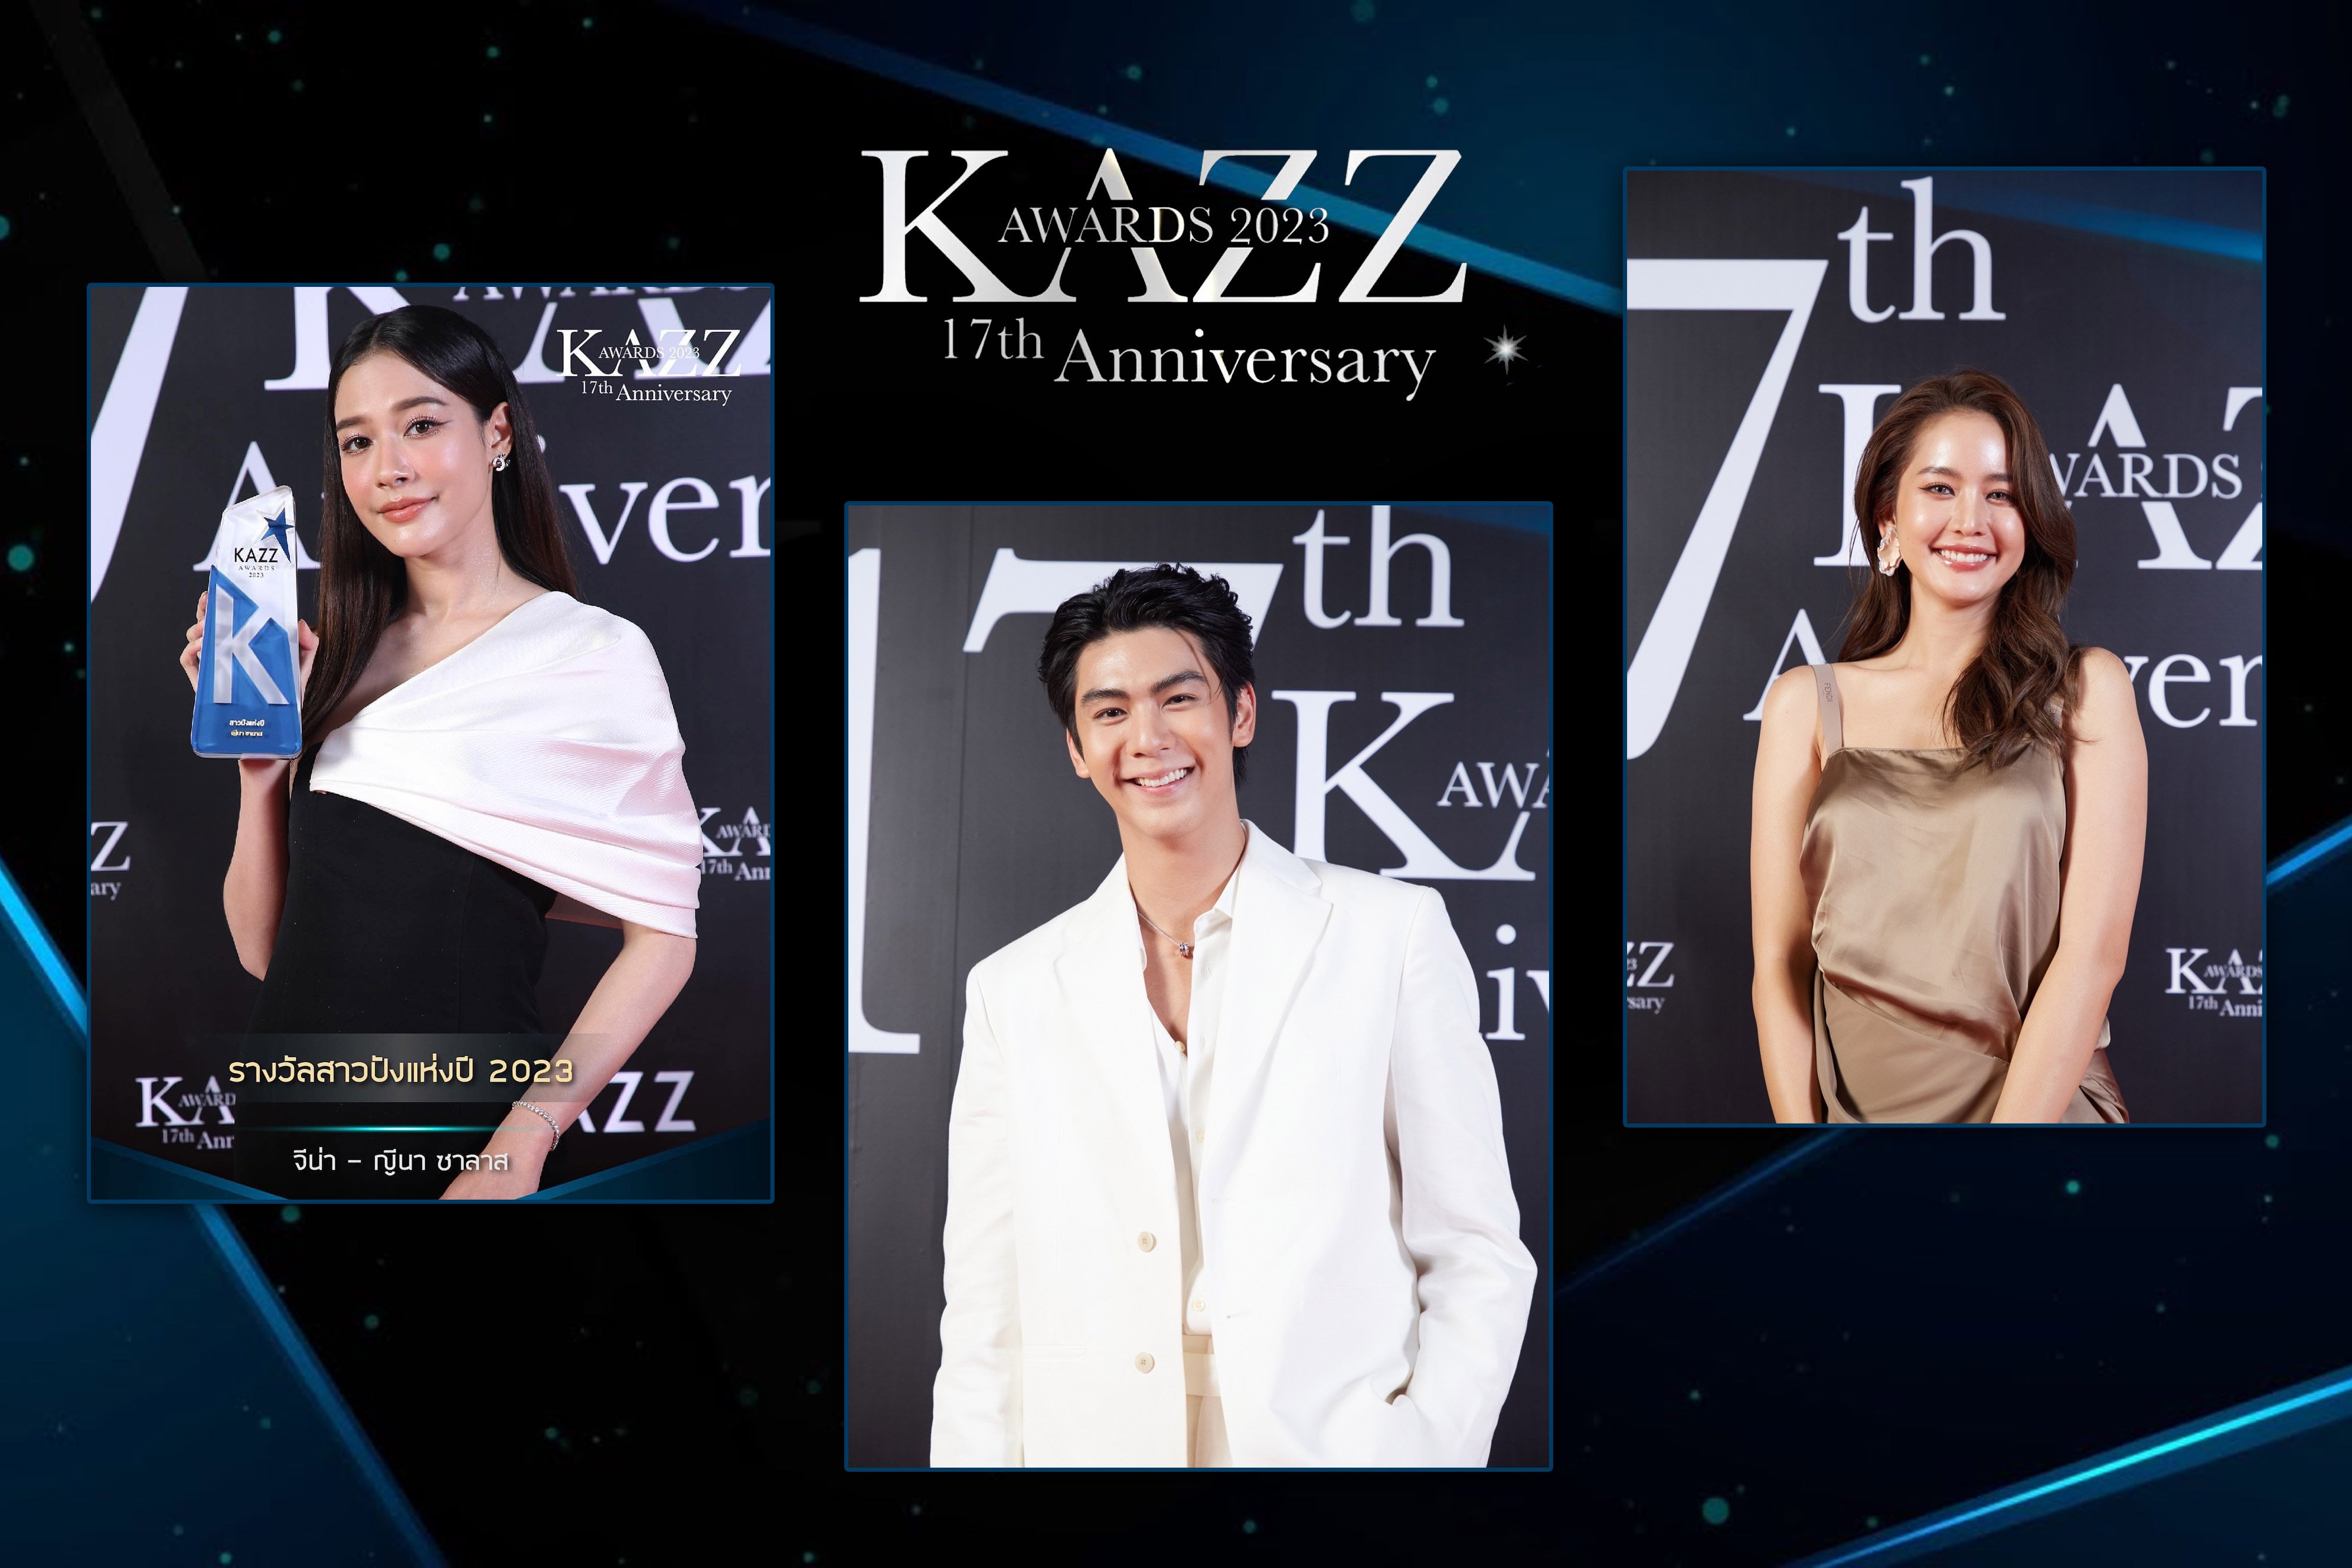 นักแสดงช่อง 3 คว้ารางวัลสุดปัง! จากเวที “KAZZ Awards 2023”